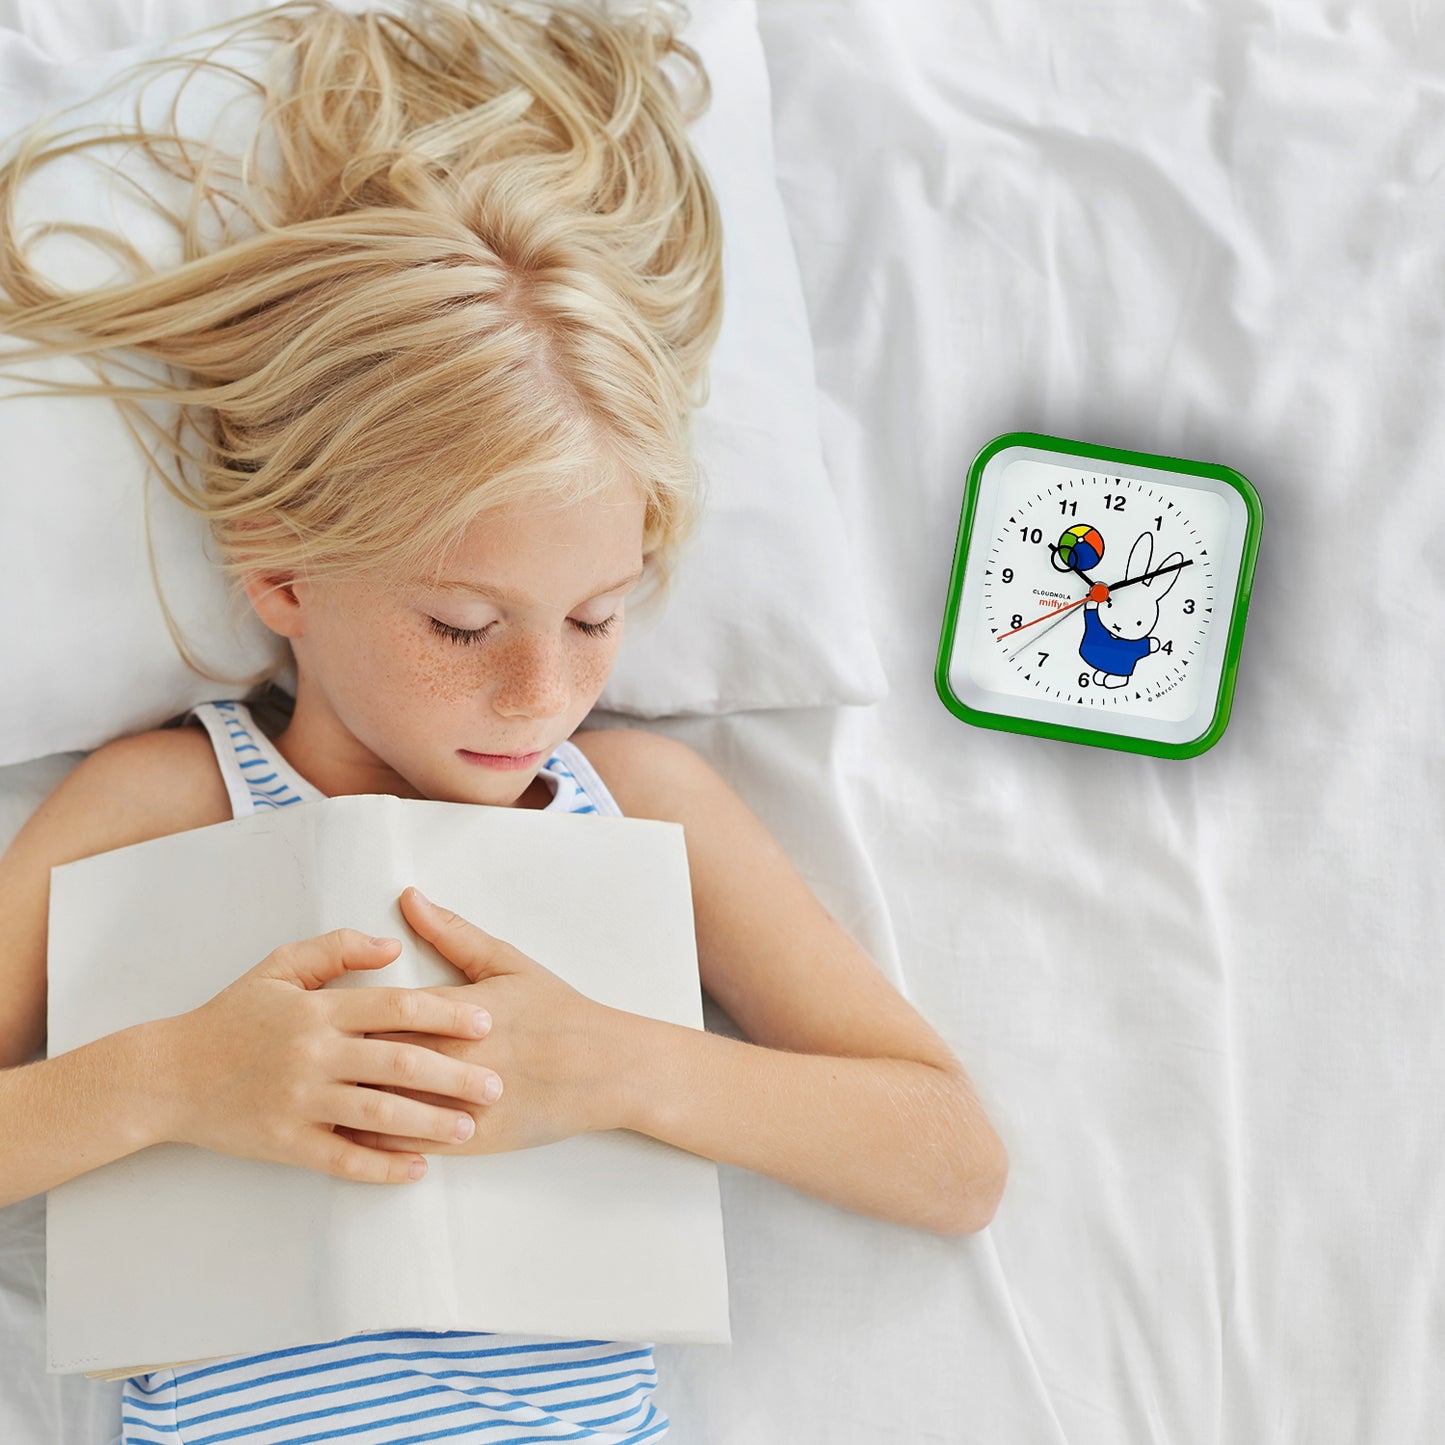 Réveil Miffy vert – Montre analogique Nijntje – Lumière LED – Fonction Snooze – Design néerlandais 